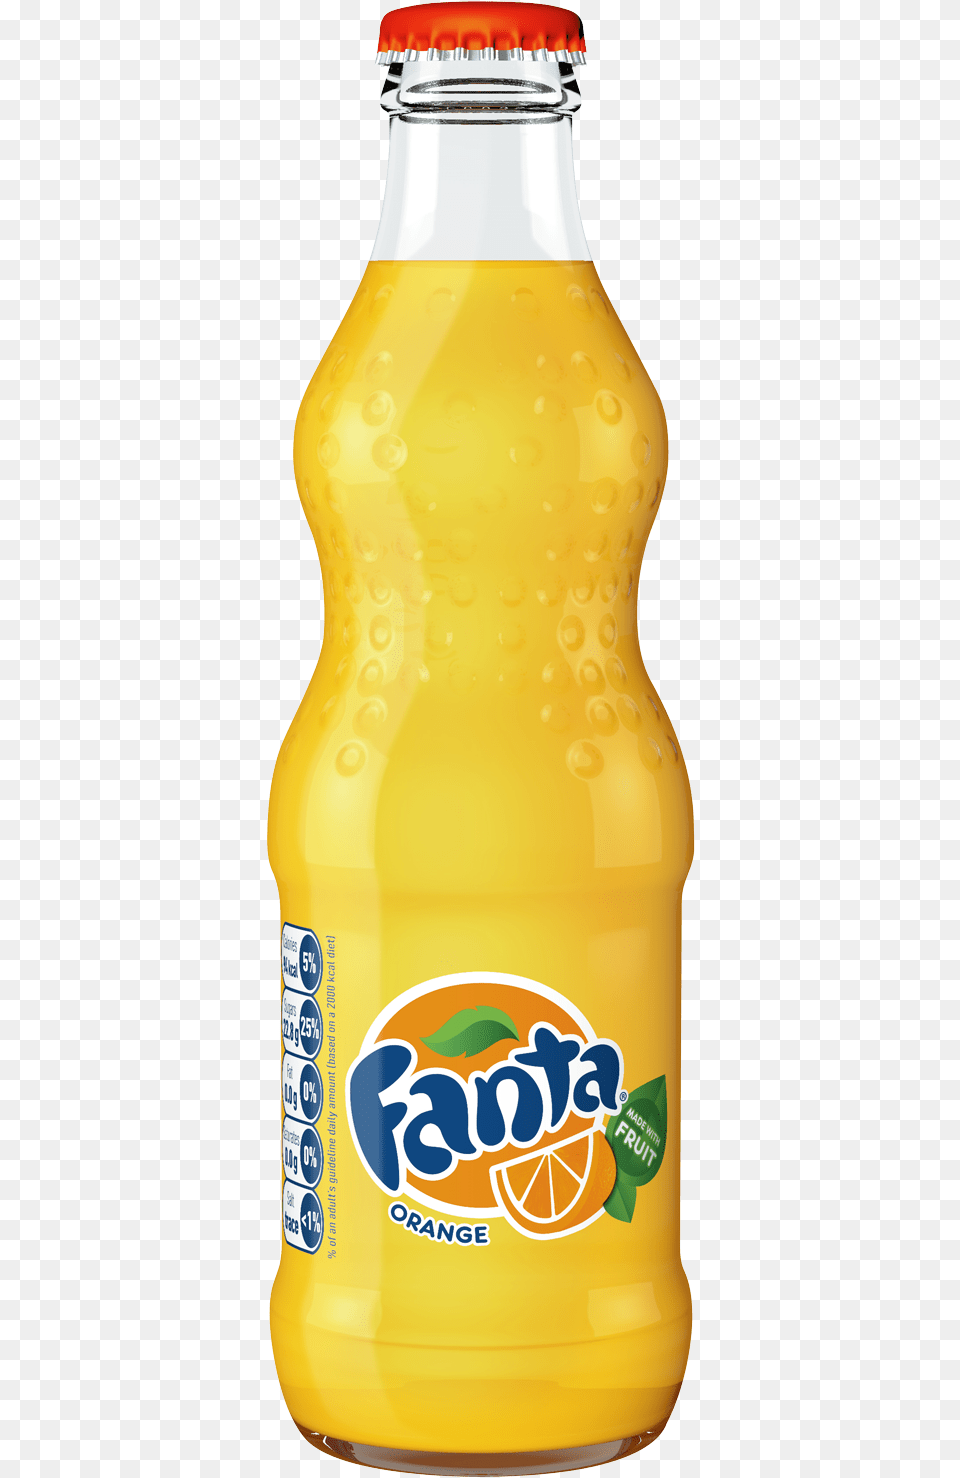 Fanta Orange Glass Bottle 24 X 330ml Fanta Glass Bottle, Beverage, Juice, Alcohol, Beer Png